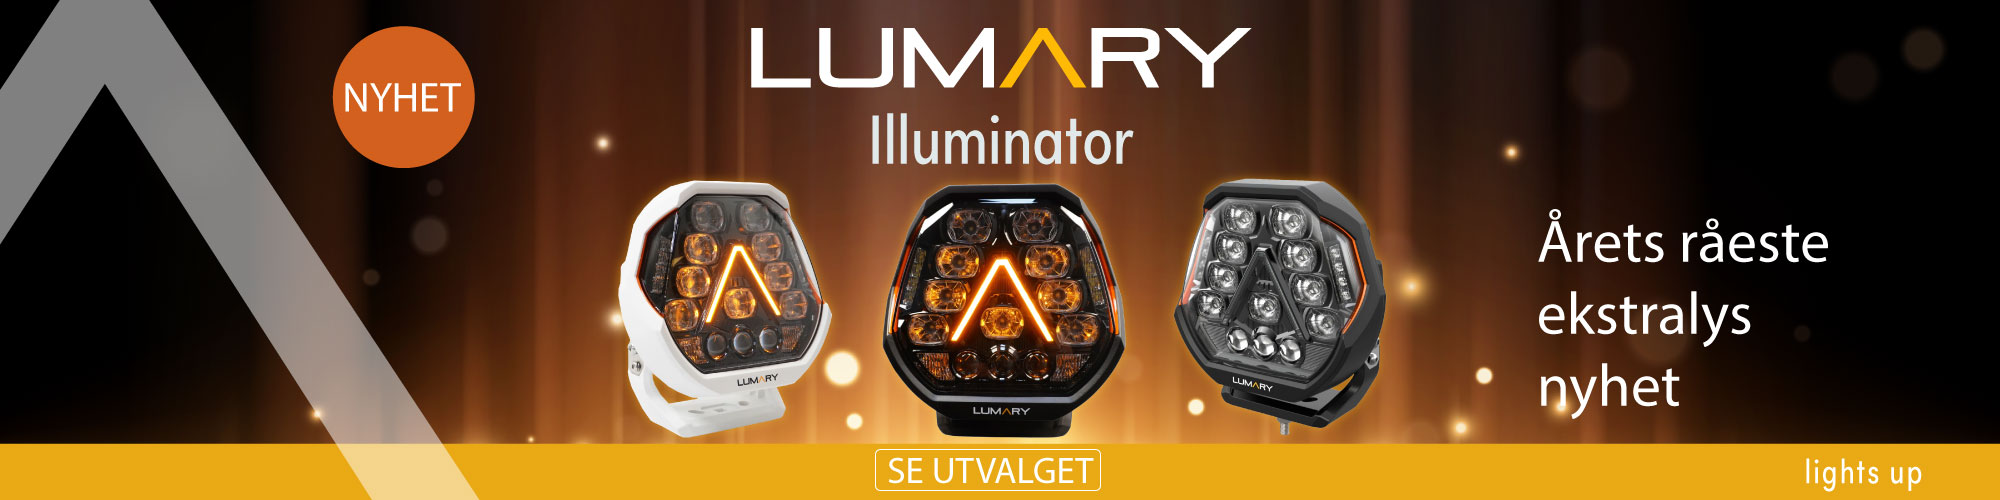 Lumary Illuminator 200 ekstralys 